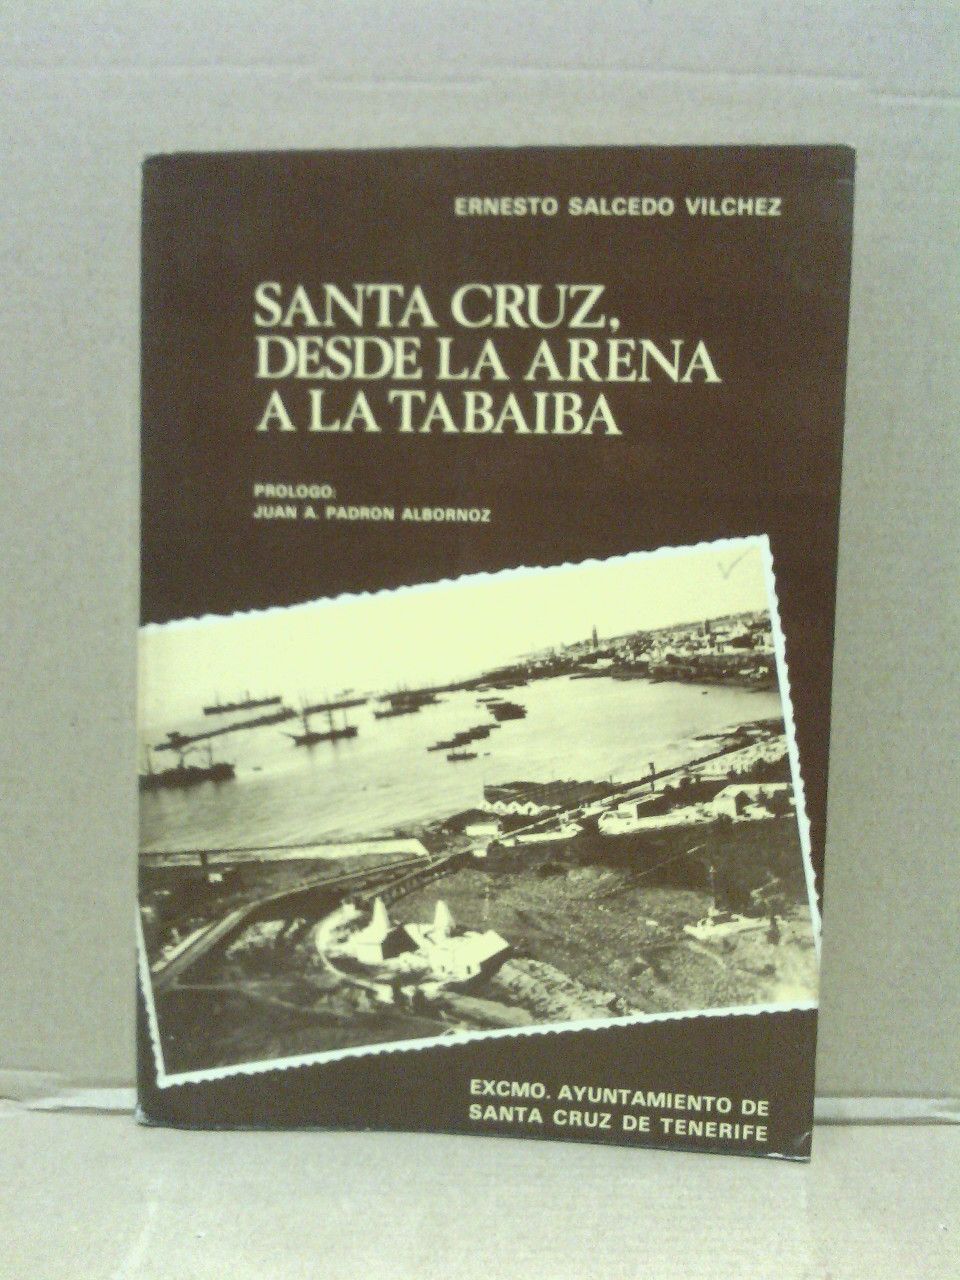 SALCEDO VILCHEZ, Ernesto - Santa Cruz, desde la arena a la tabaiba